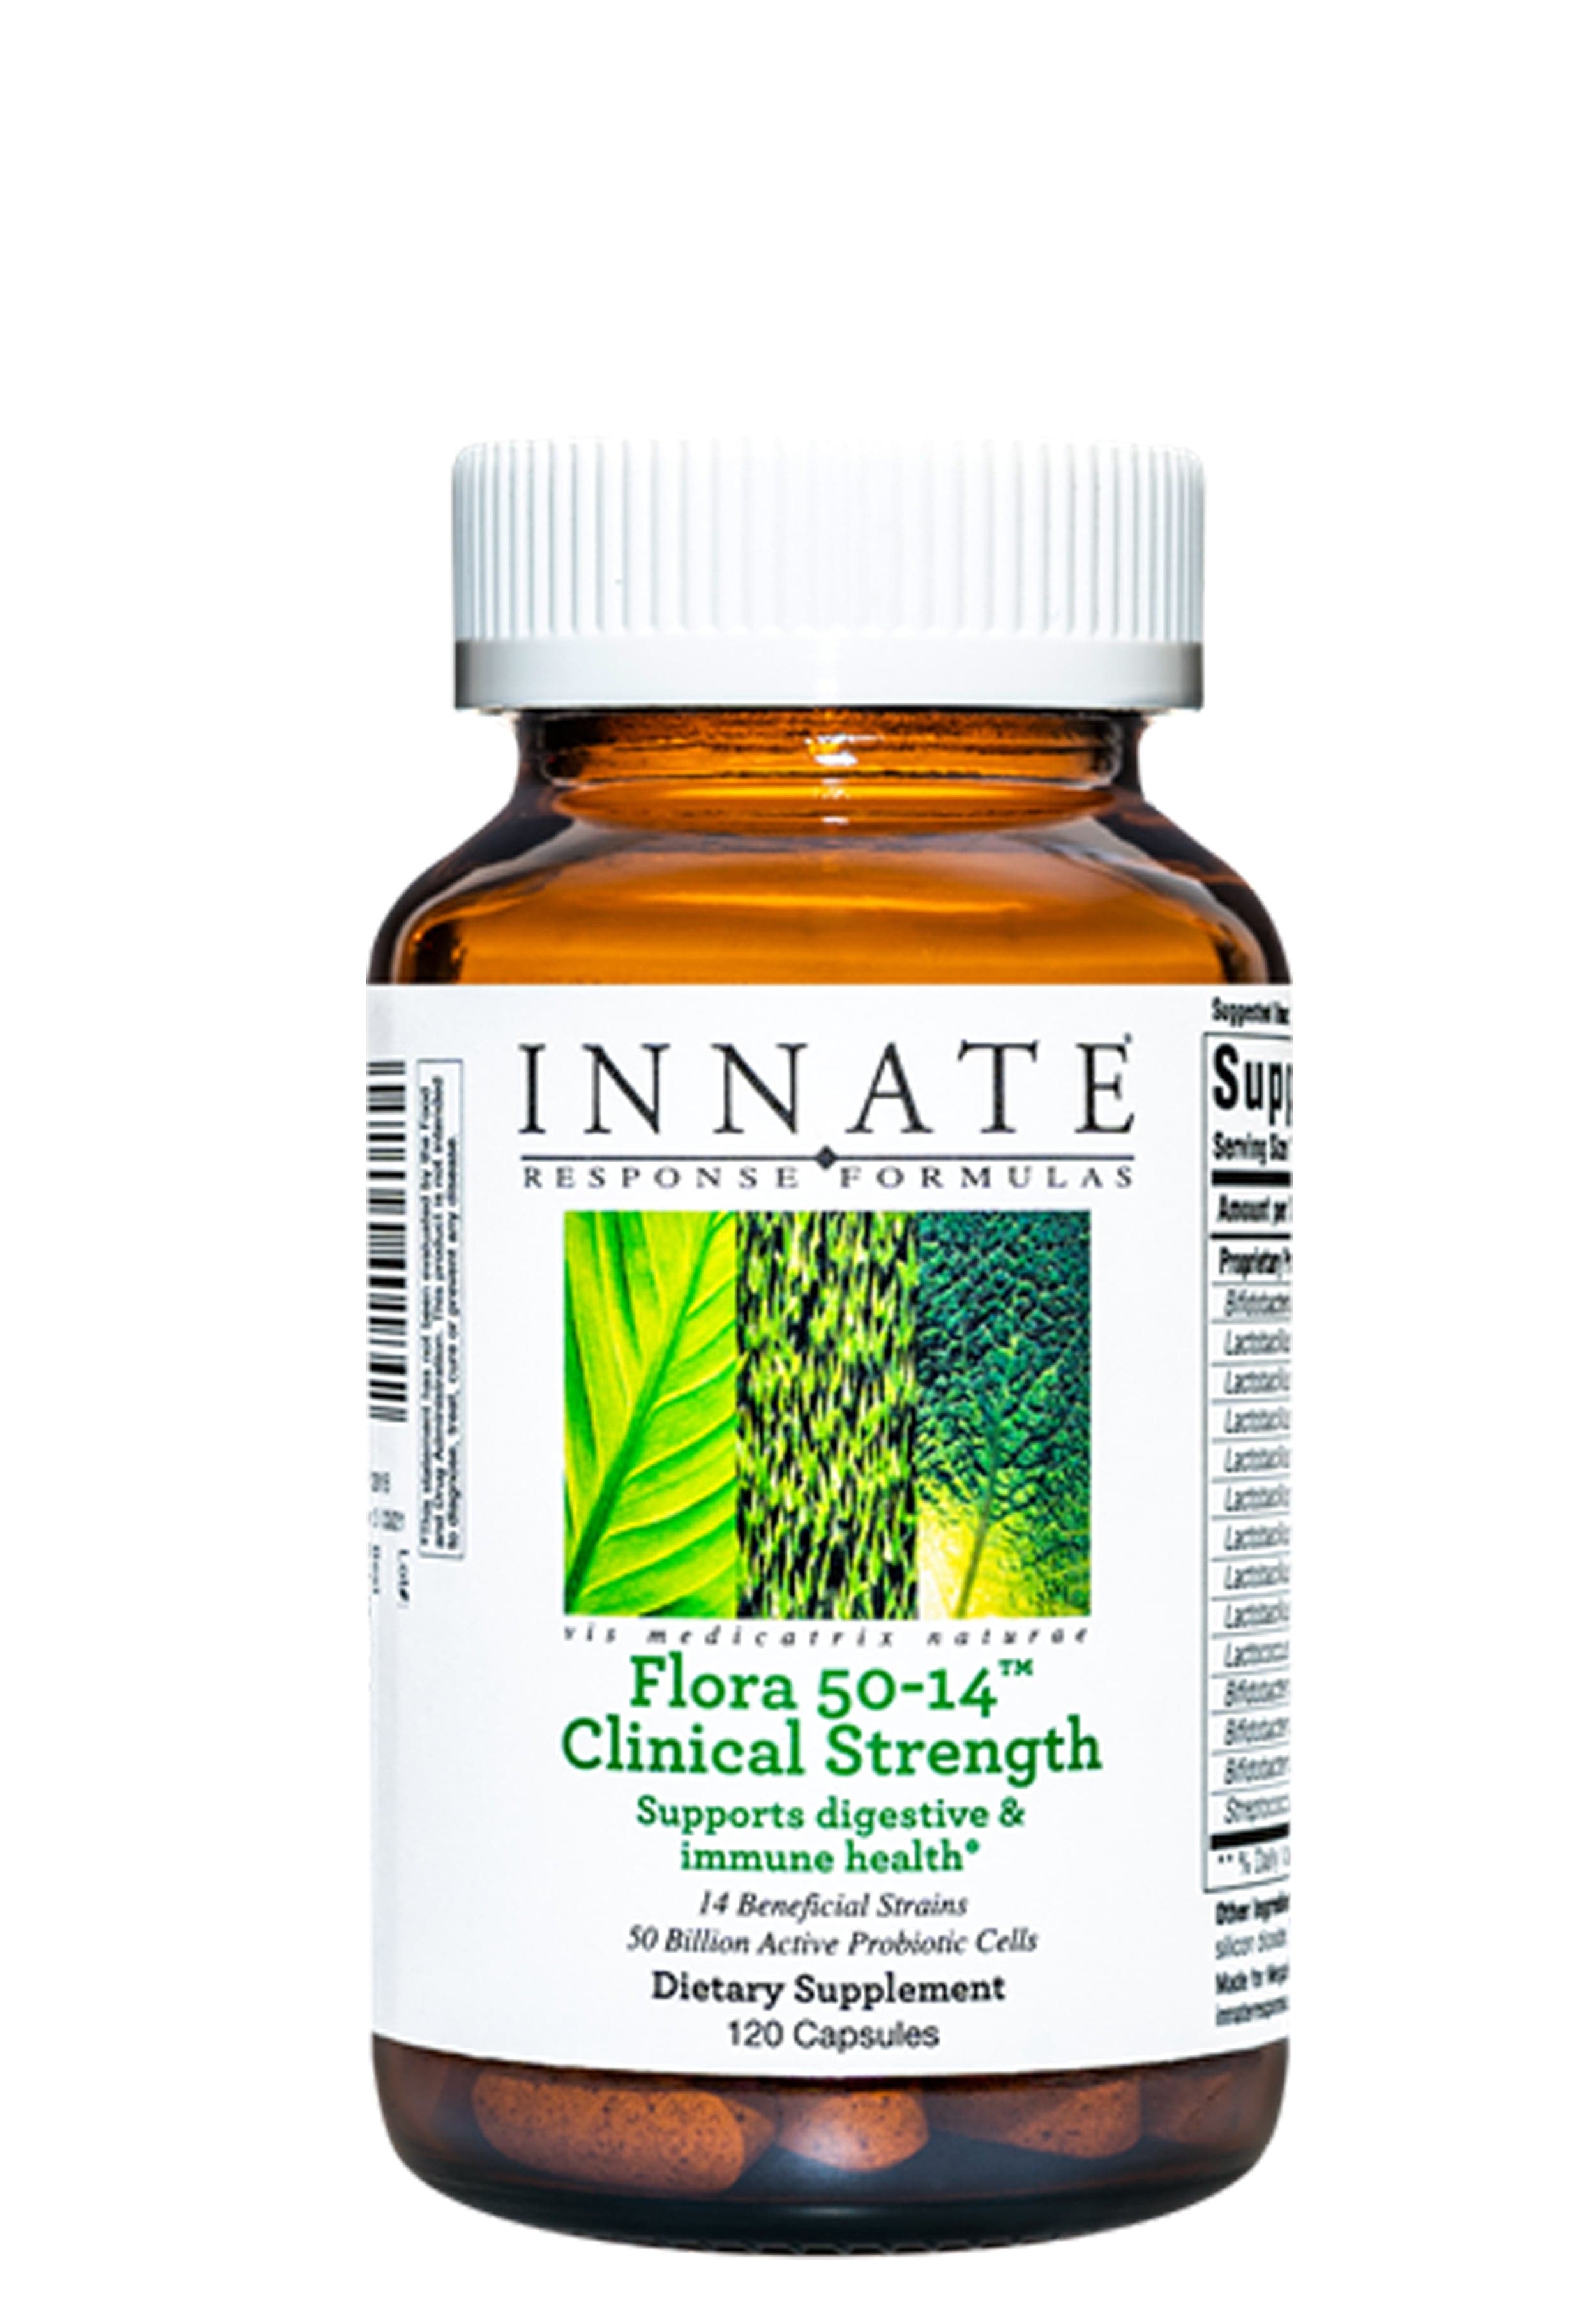 Innate Response Formulas Flora 50-14 Clinical Strength